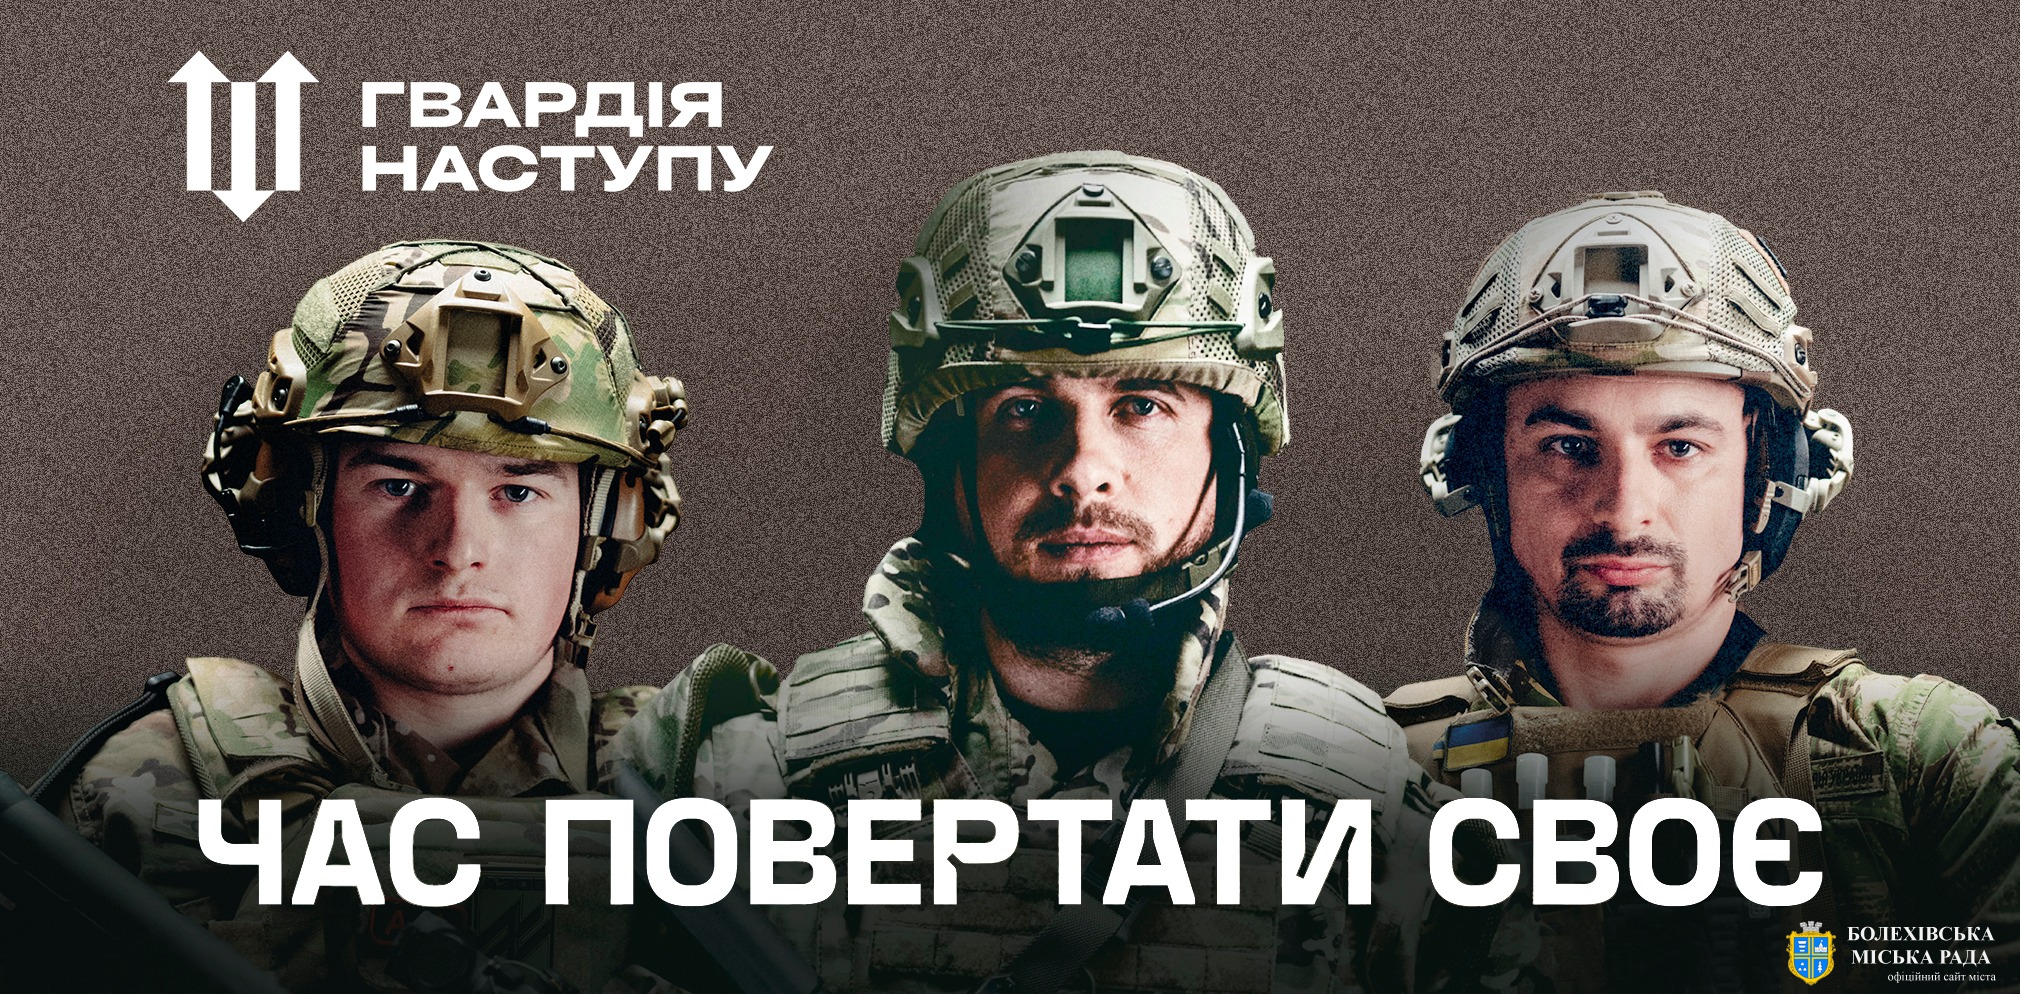 Міністерство внутрішніх справ України формує штурмові бригади «Гвардія наступу»